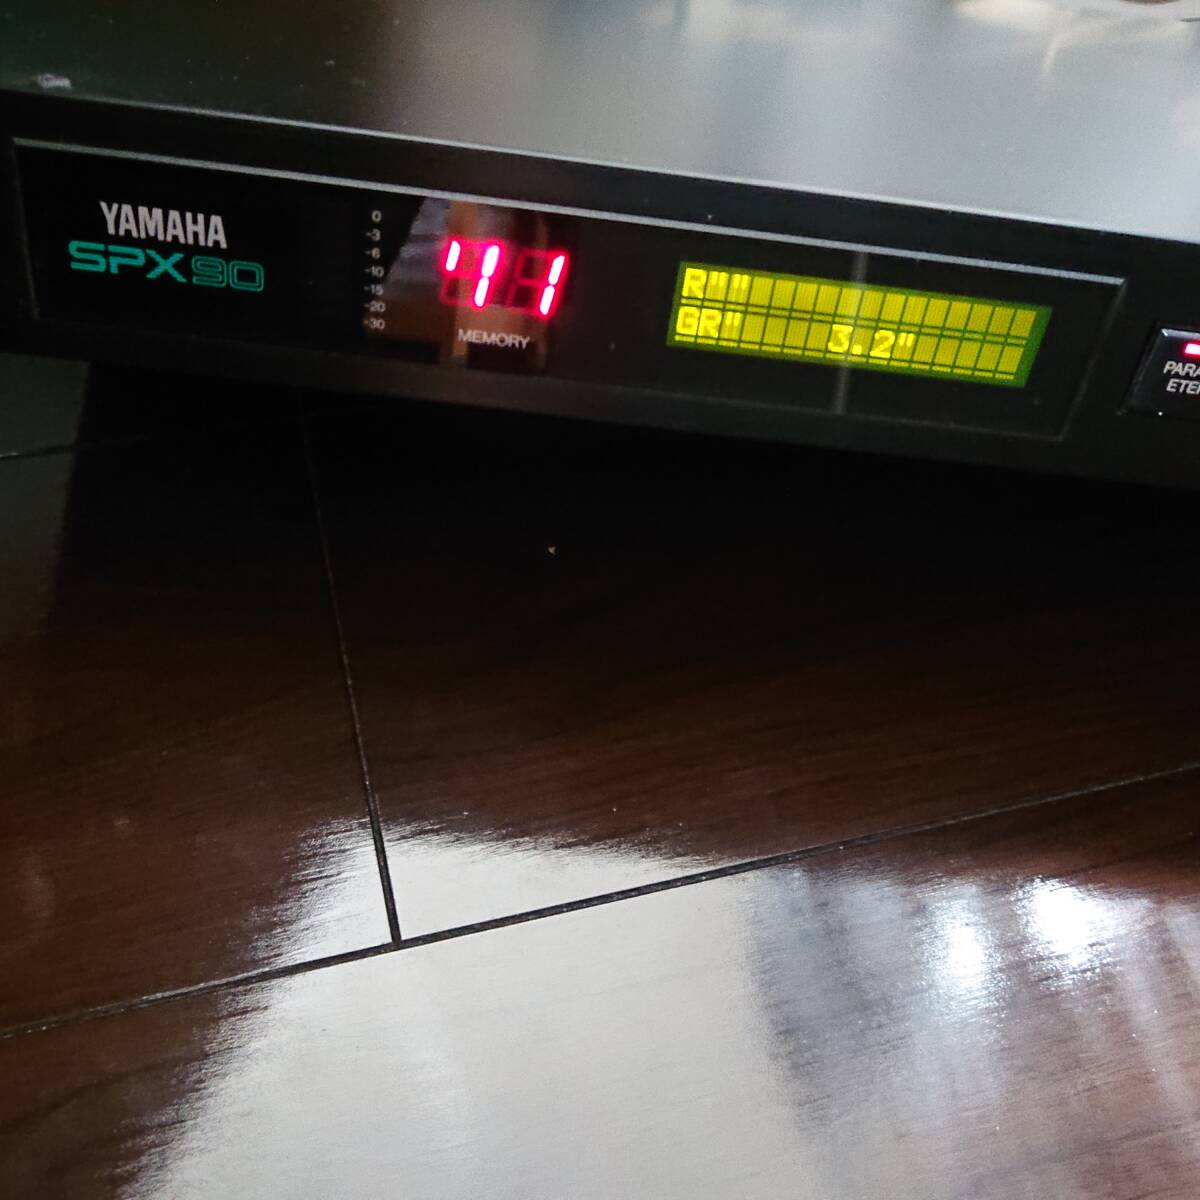 YAMAHA Yamaha цифровой звук процессор SPX90 электризация проверка утиль 